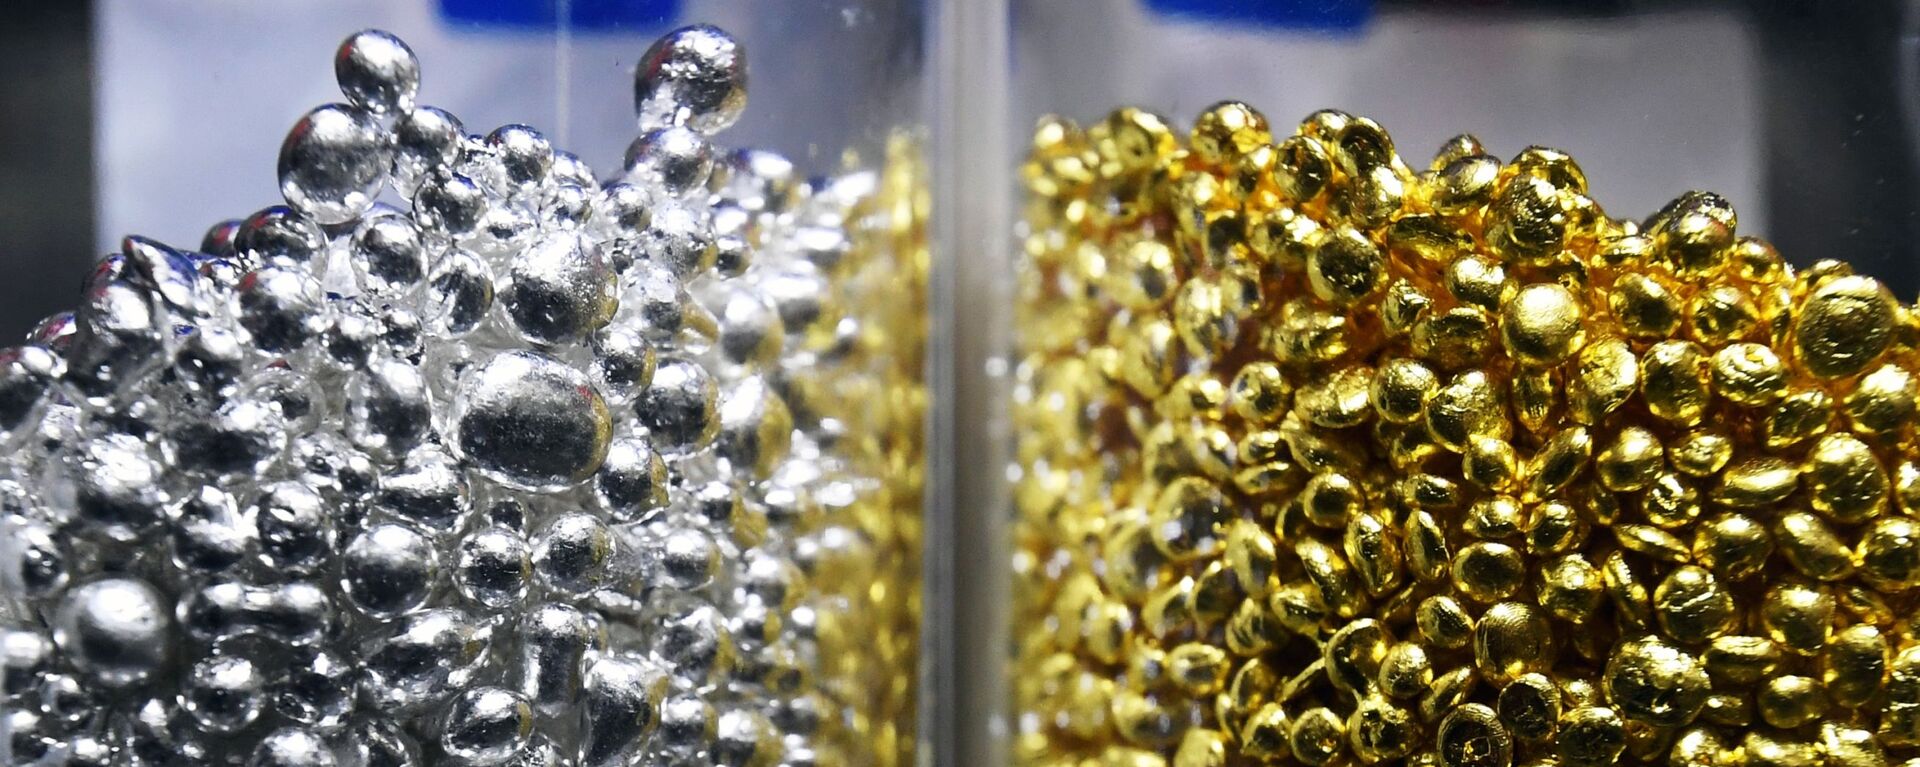 Аффинированное золото и серебро высшей пробы 99,99 процентов чистоты в гранулах. Архивное фото - Sputnik Кыргызстан, 1920, 19.05.2021